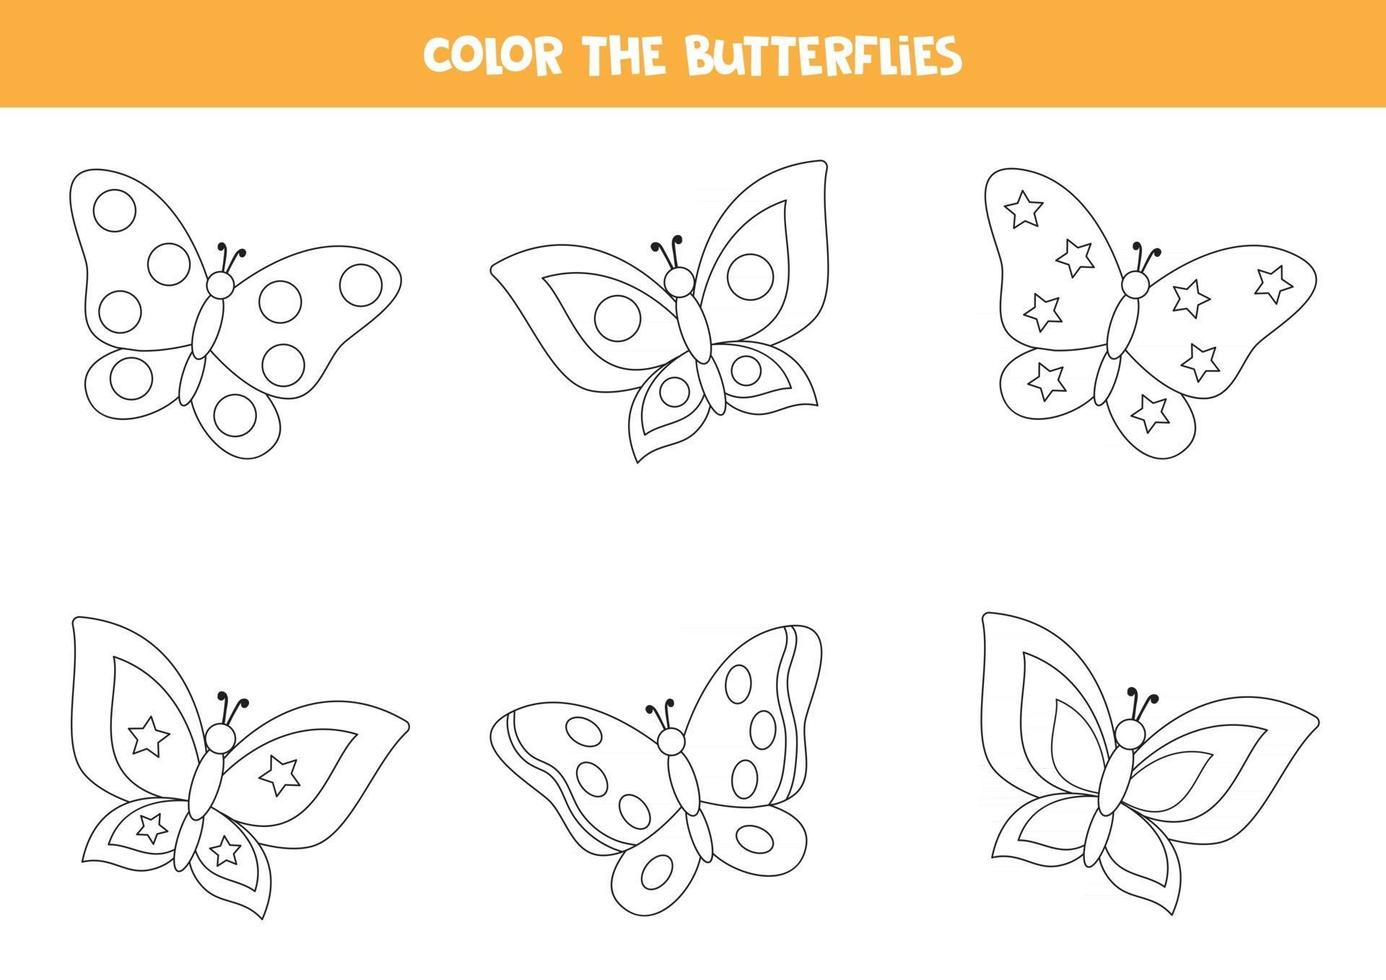 kleurplaat voor kinderen. set van zwarte en witte vlinders. vector